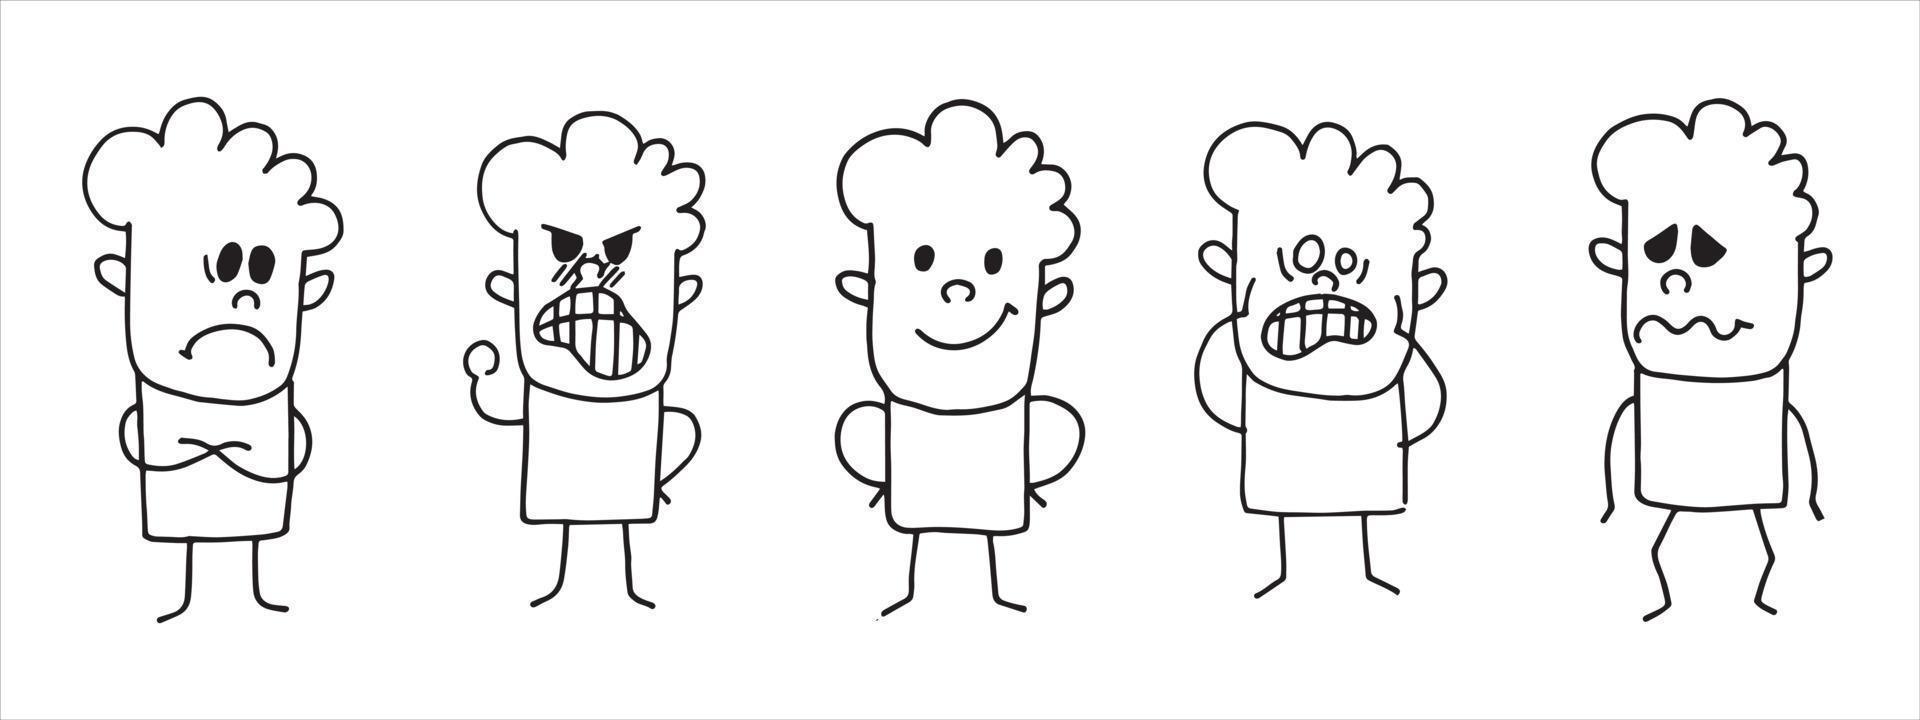 illustrazione vettoriale in stile doodle. insieme di semplici personaggi lineari, persone con diverse emozioni, stati d'animo. paura, rabbia, gioia, disgusto, tristezza, orrore. isolato su sfondo bianco.